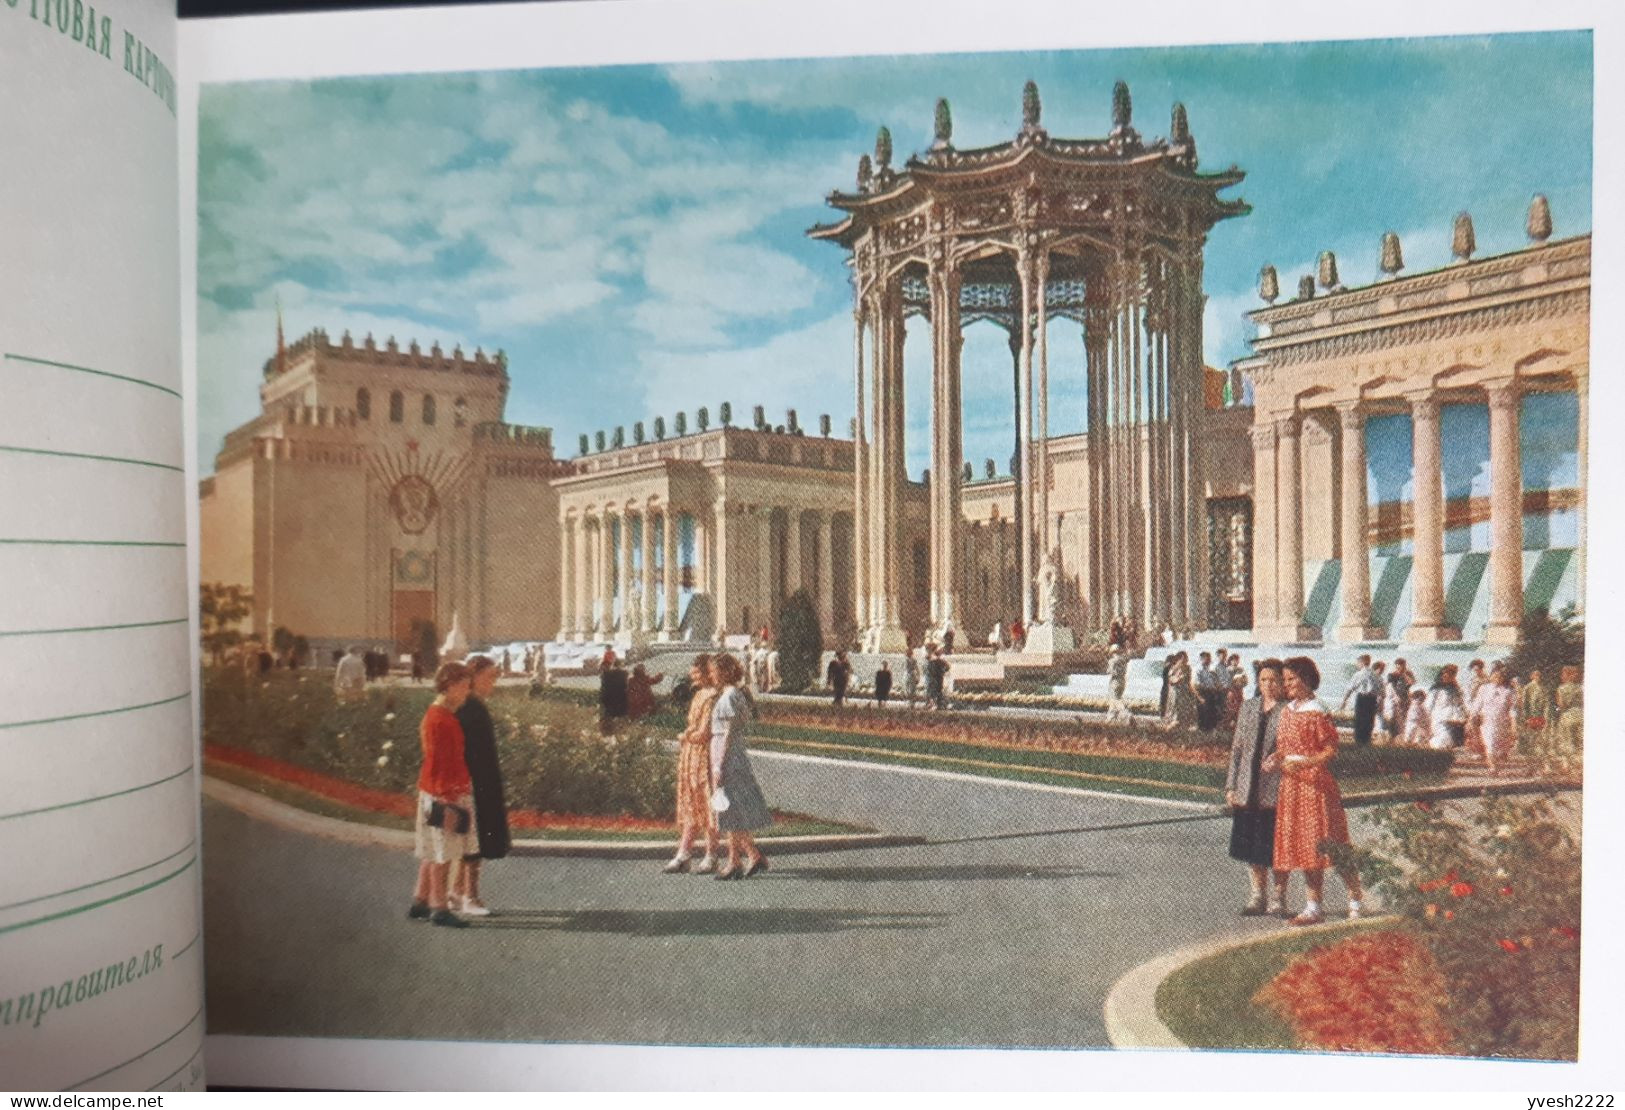 URSS 1956. Carnet de 12 entiers postaux. Exposition agricole de Moscou. Fleurs, raisins, palmiers fontaines architecture